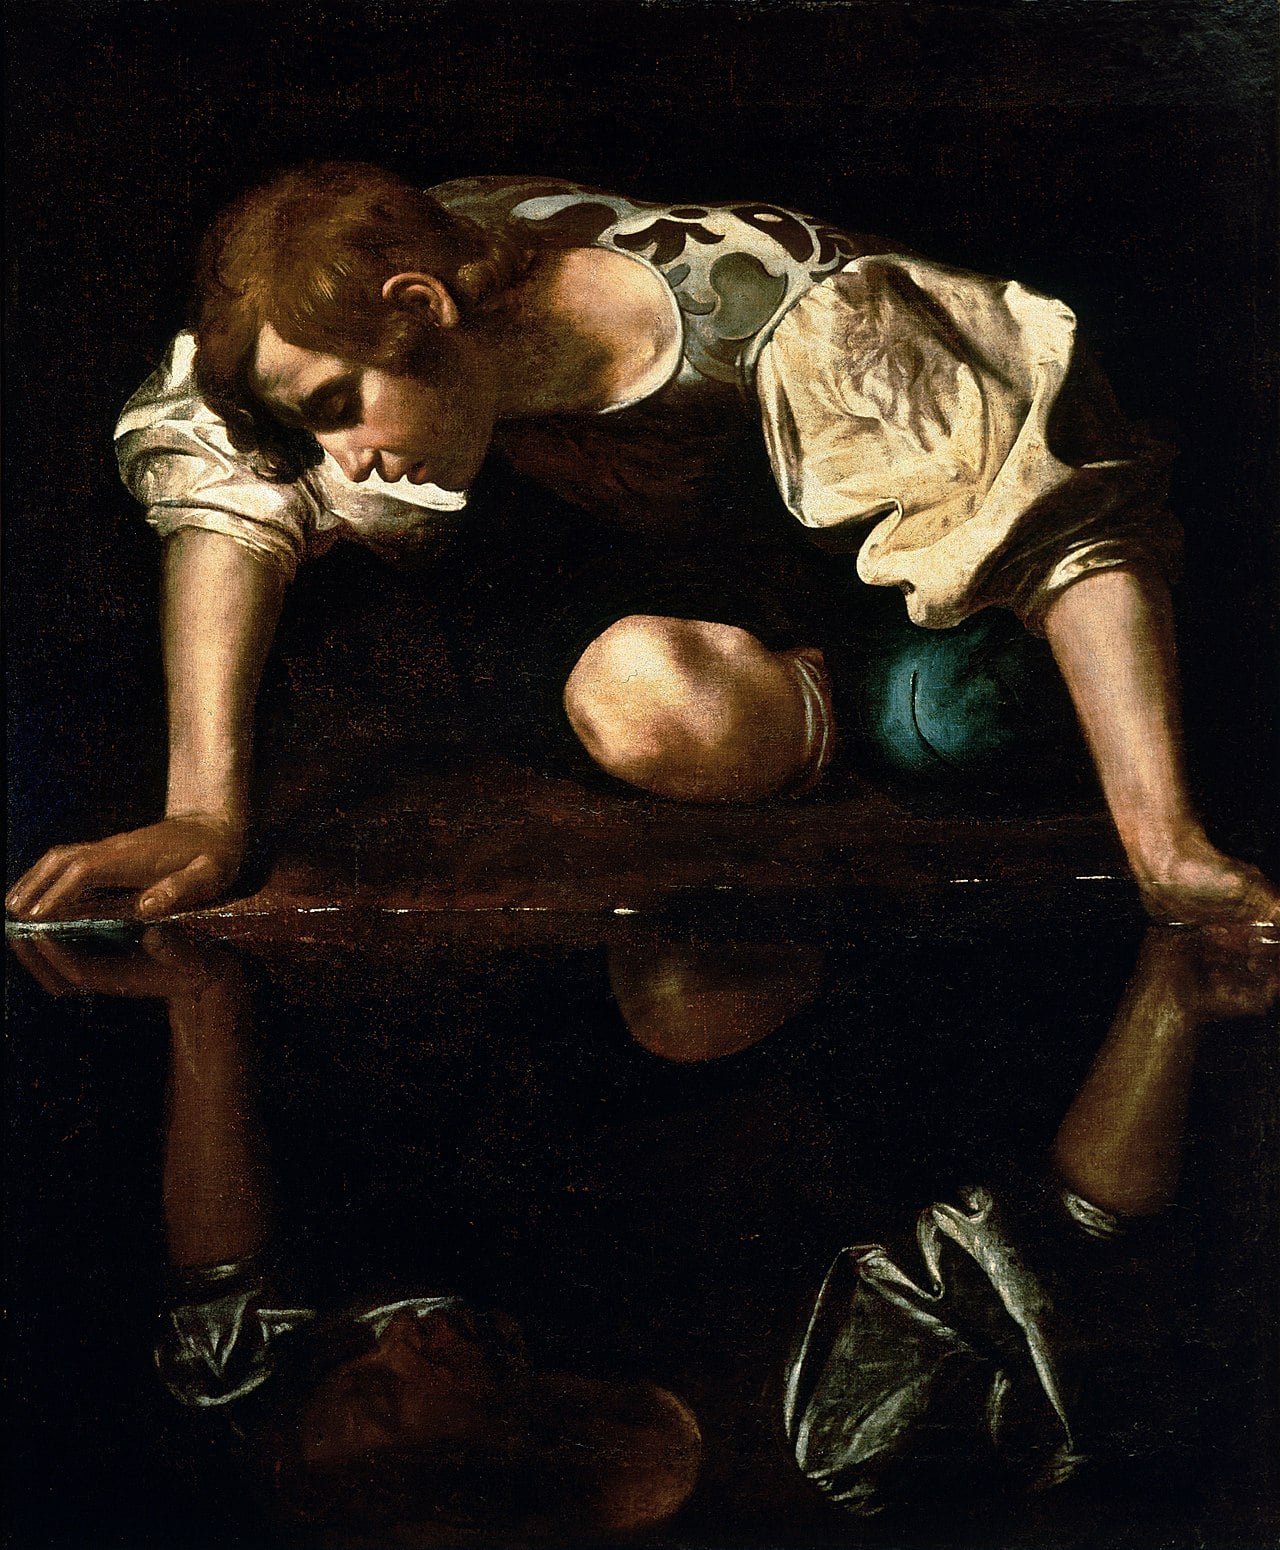 Bức tranh 'Narciso' của Caravaggio